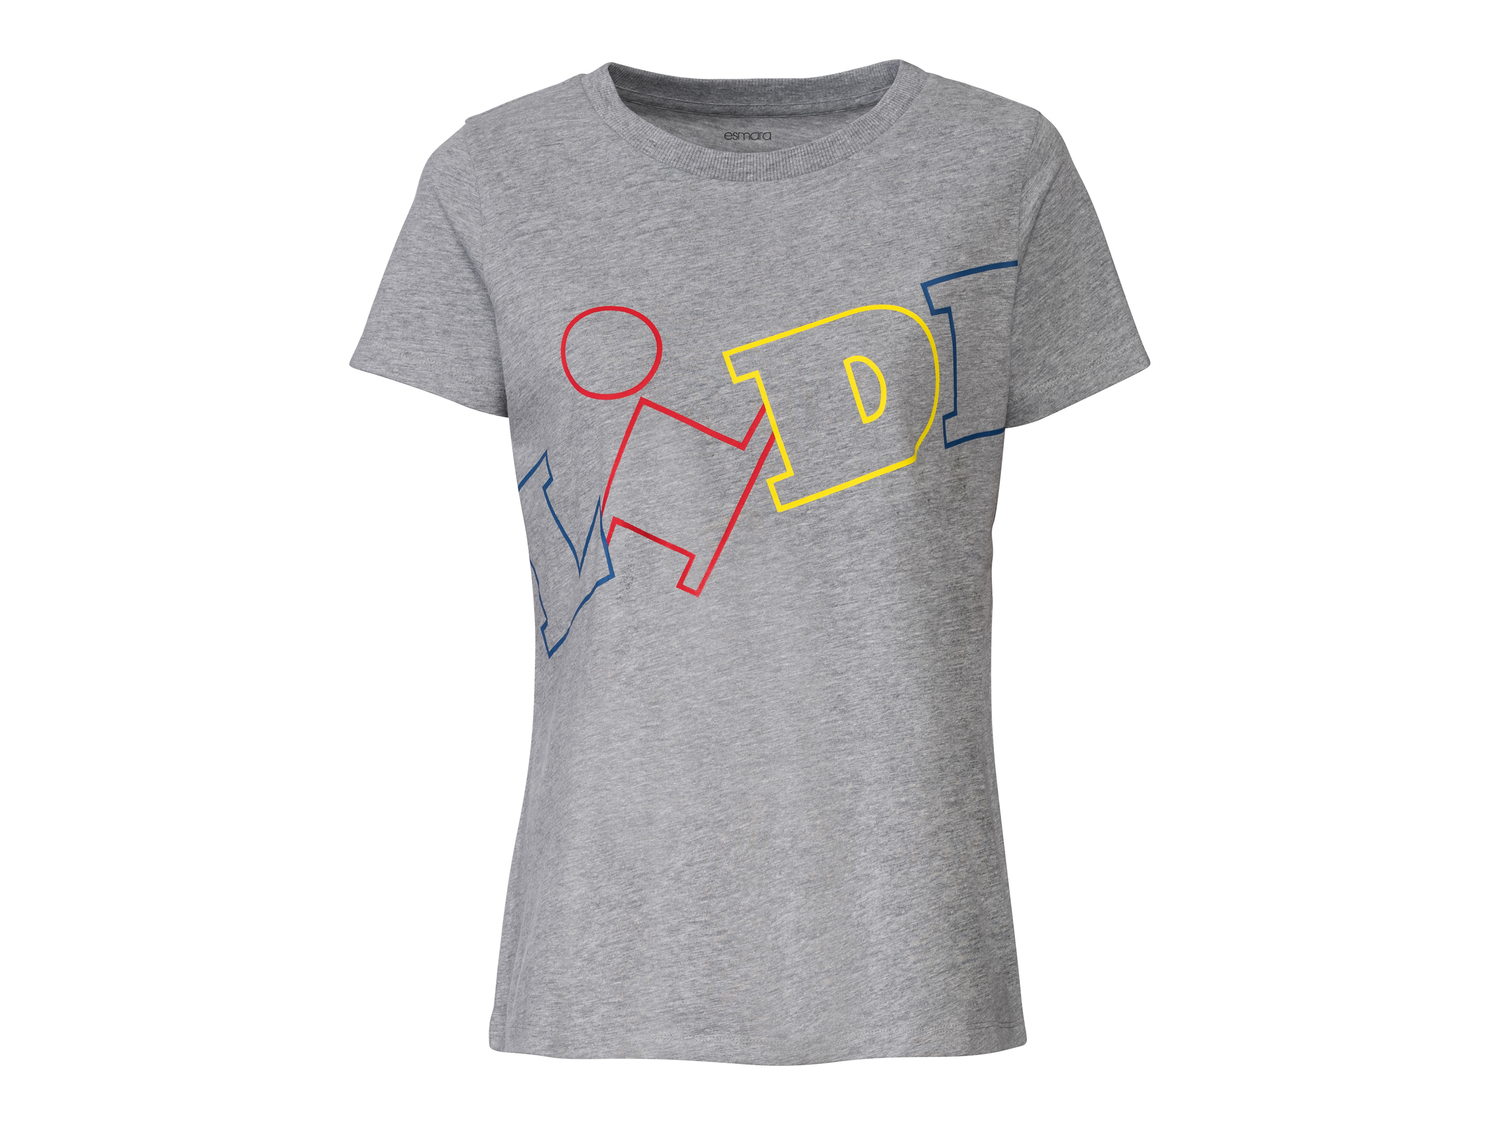 T-shirt da donna Lidl Esmara, prezzo 3.99 € 
Misure: S-L
Taglie disponibili

Caratteristiche

- ...